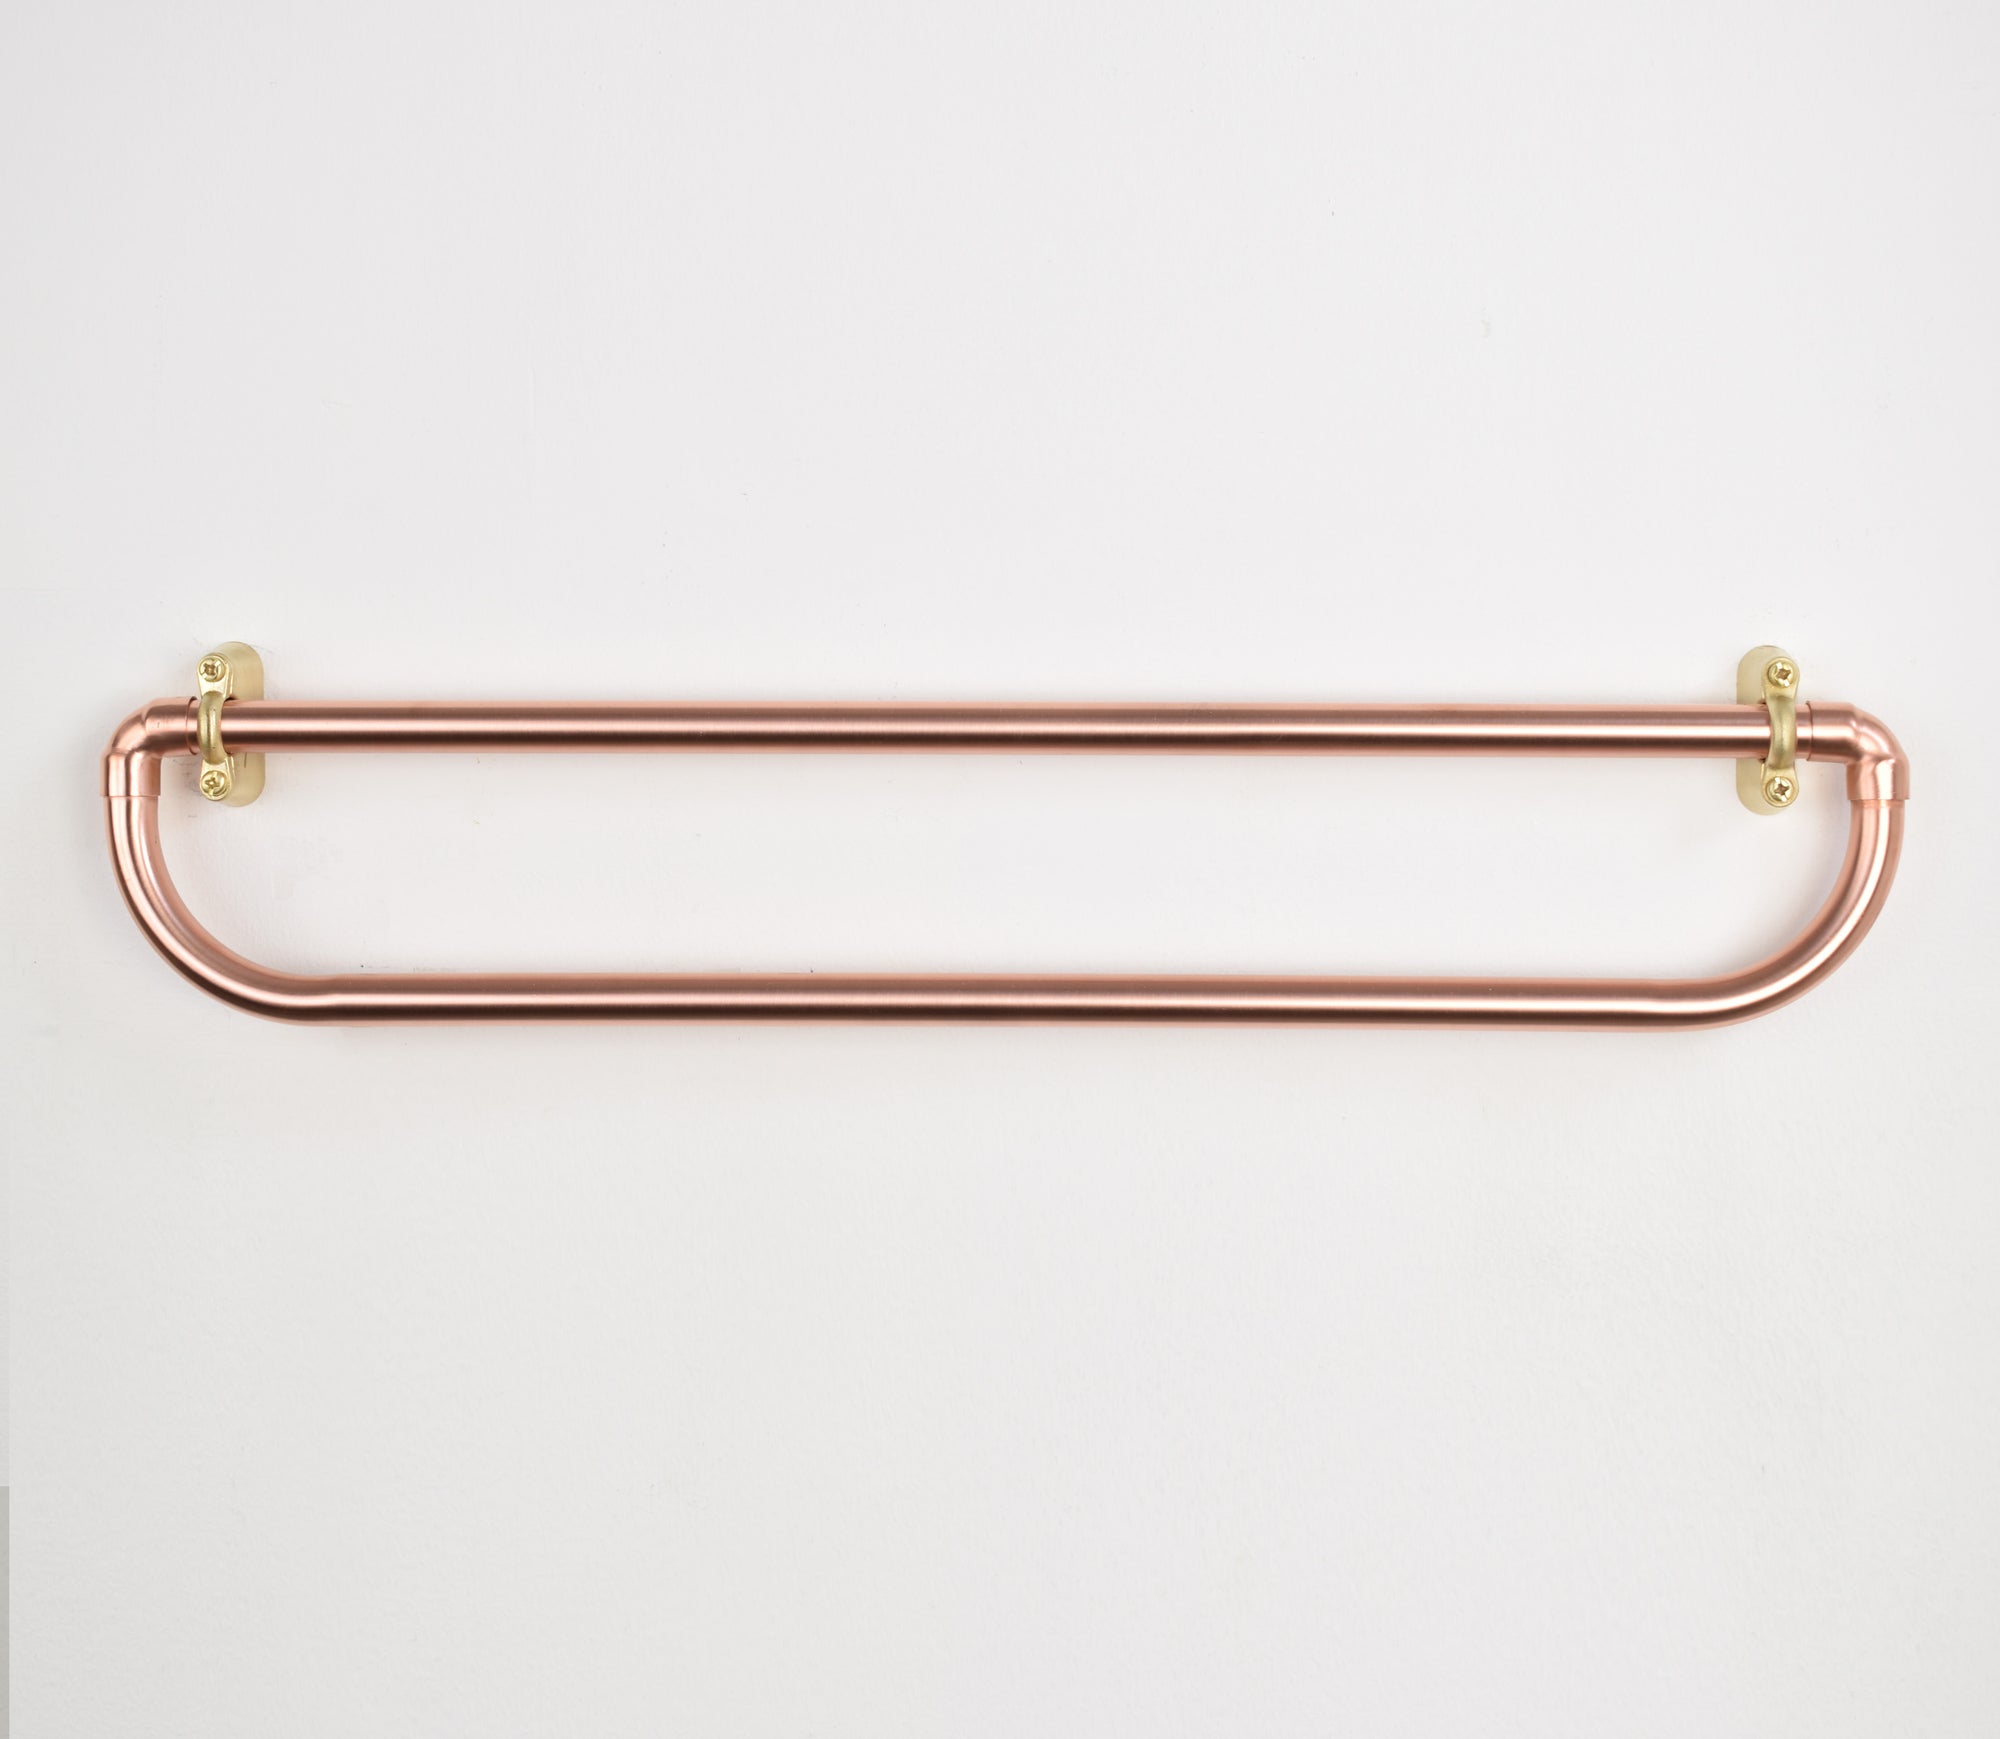 Rounded Copper Bathroom Set - Towel holder